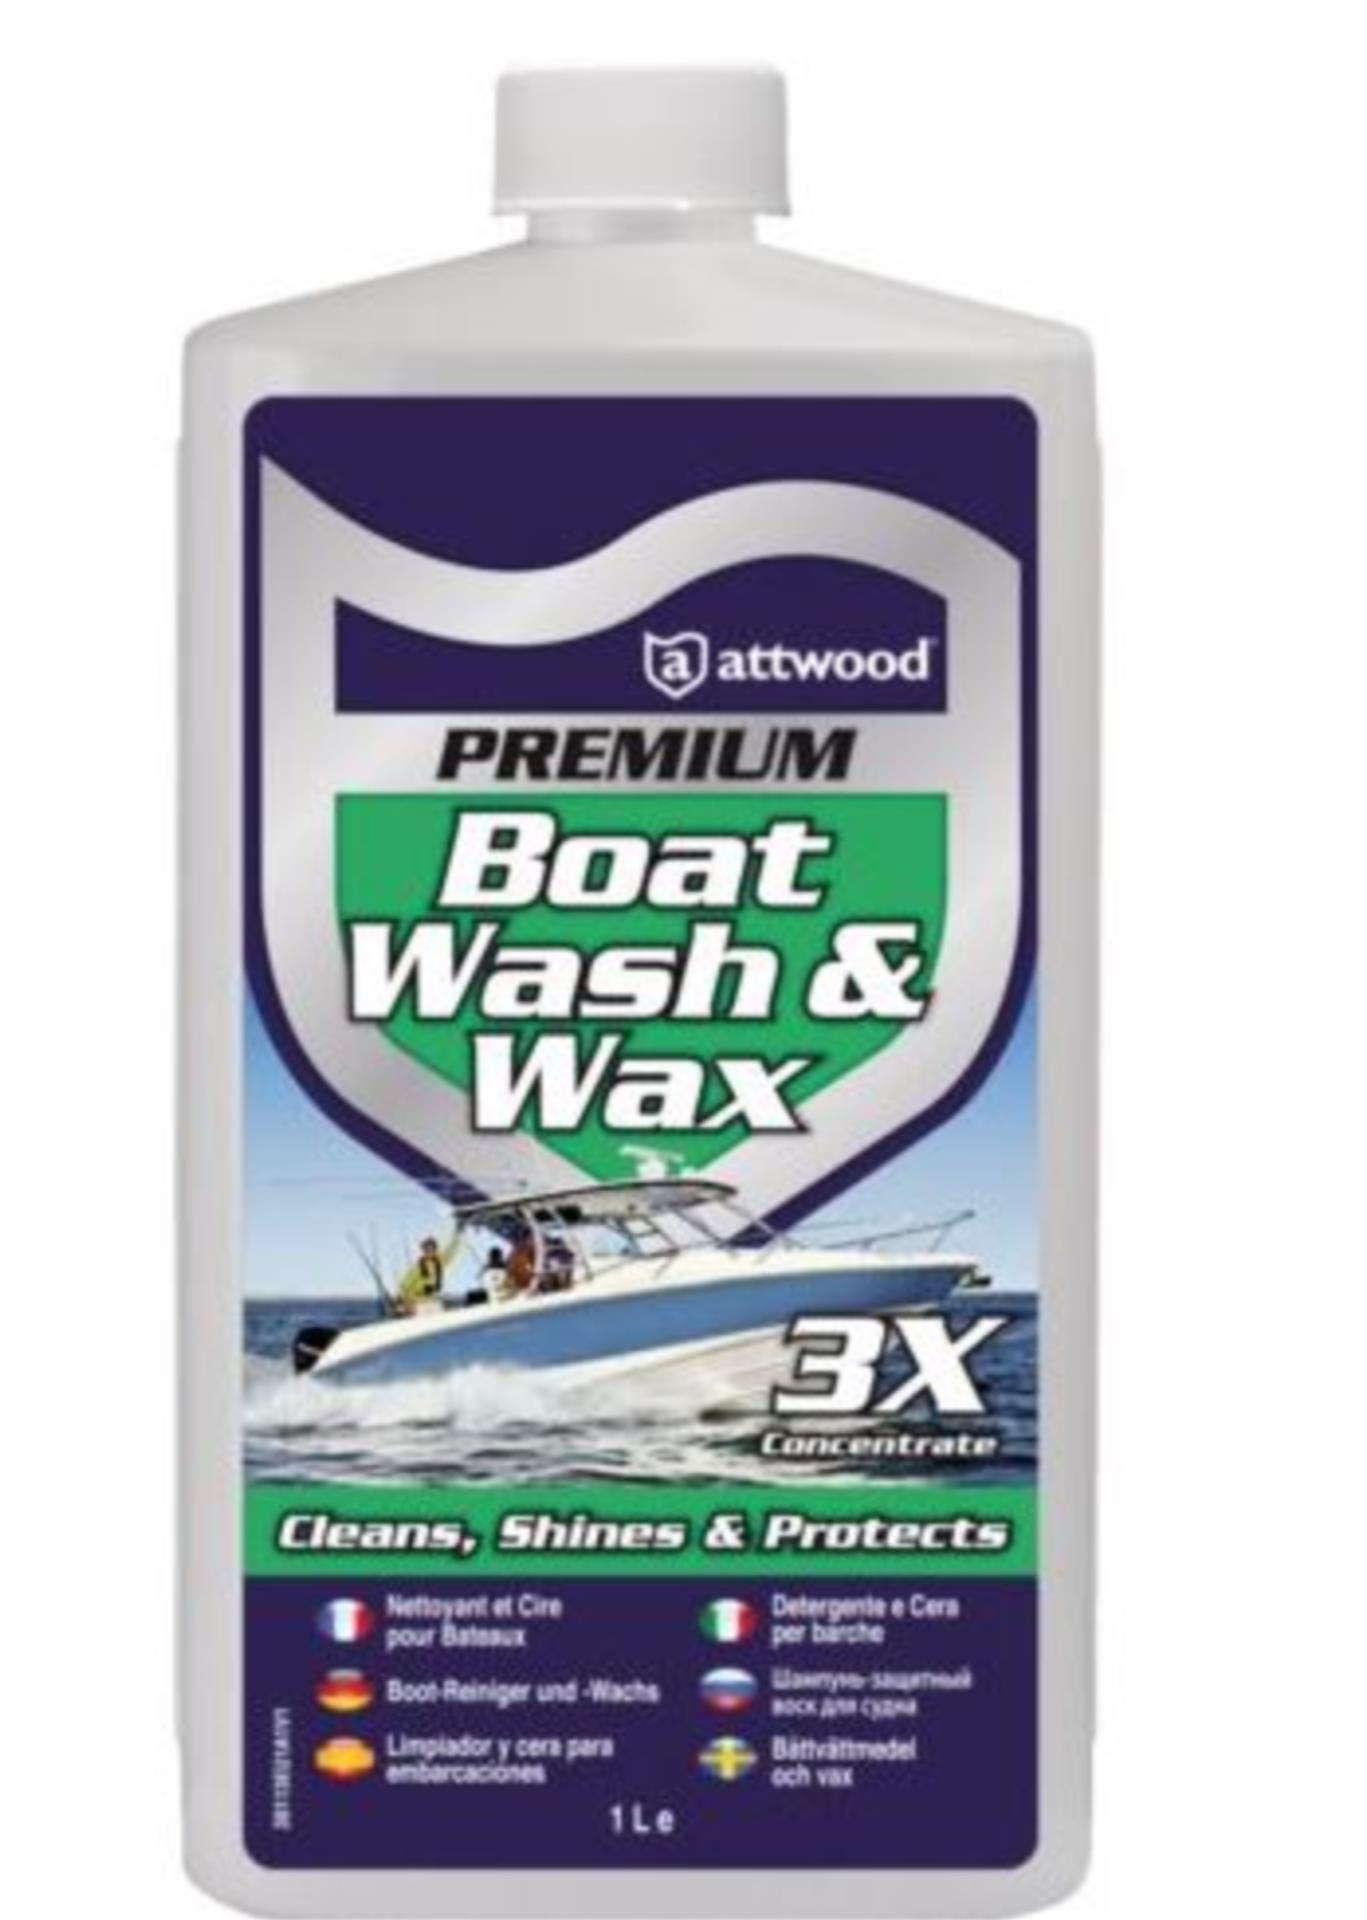 Attwood Premium Boat Wash & Wax  1l